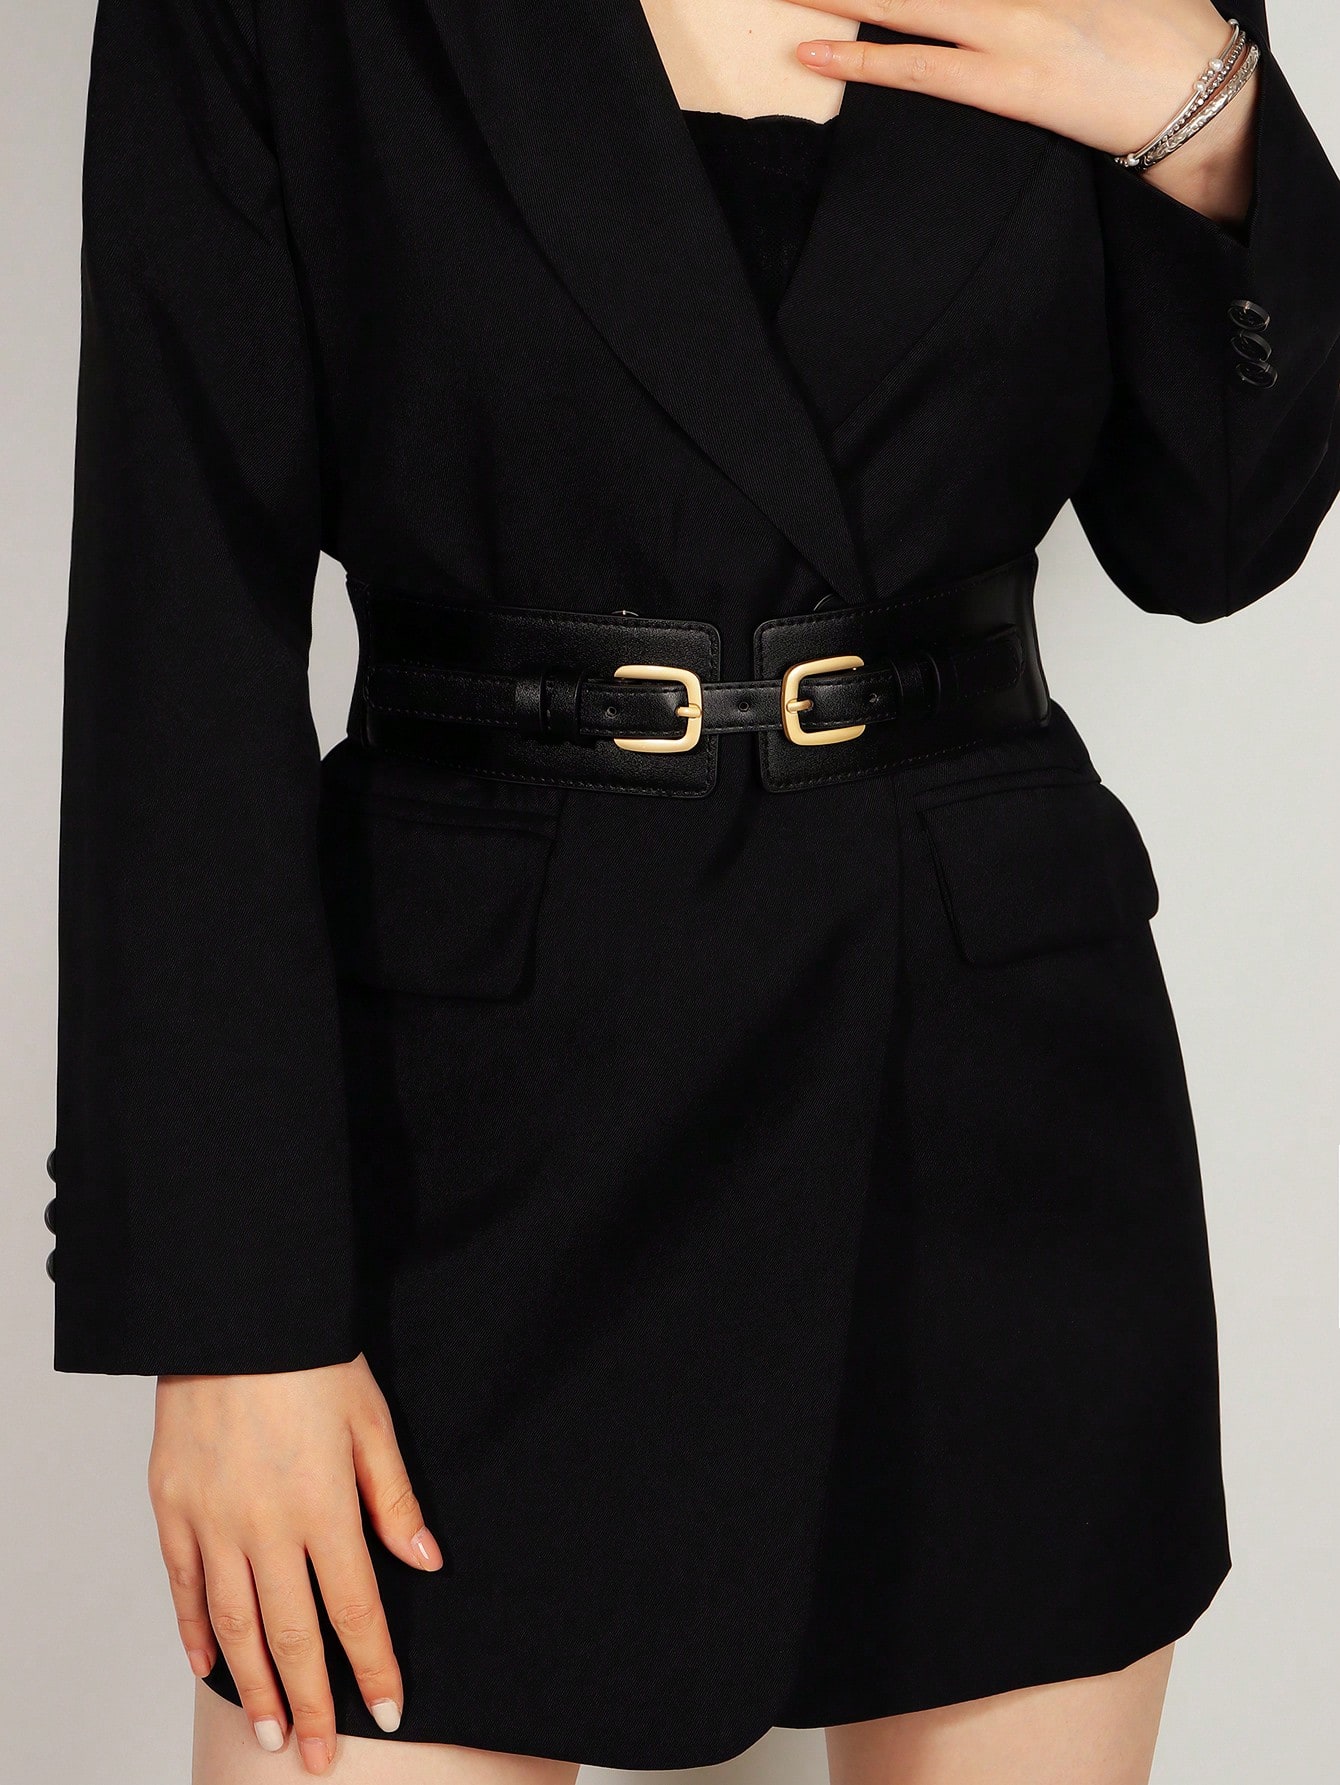 Новый женский пояс в стиле ретро в стиле суда, черный модный эластичный тонкий широкий пояс на талию юбка пальто декоративный пояс ремень с классической пряжкой в стиле ретро